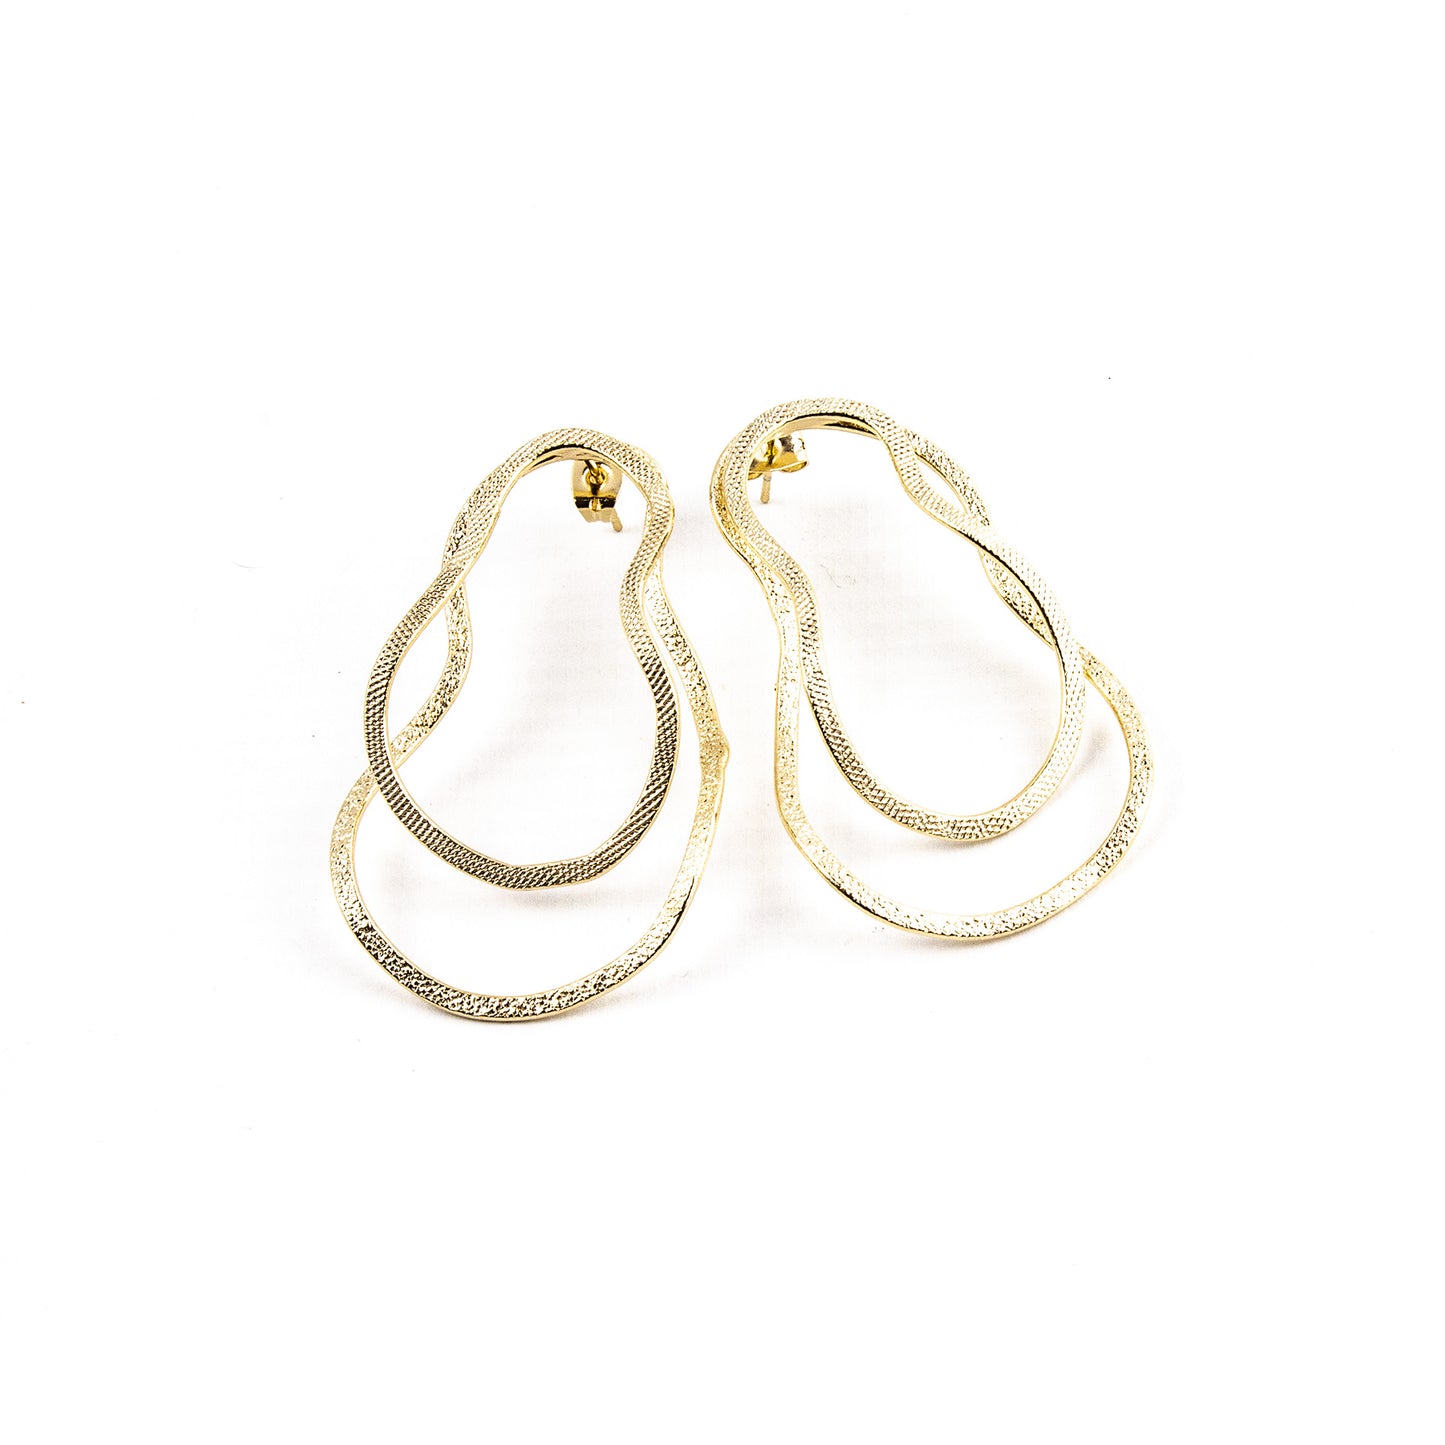 Artemide earrings